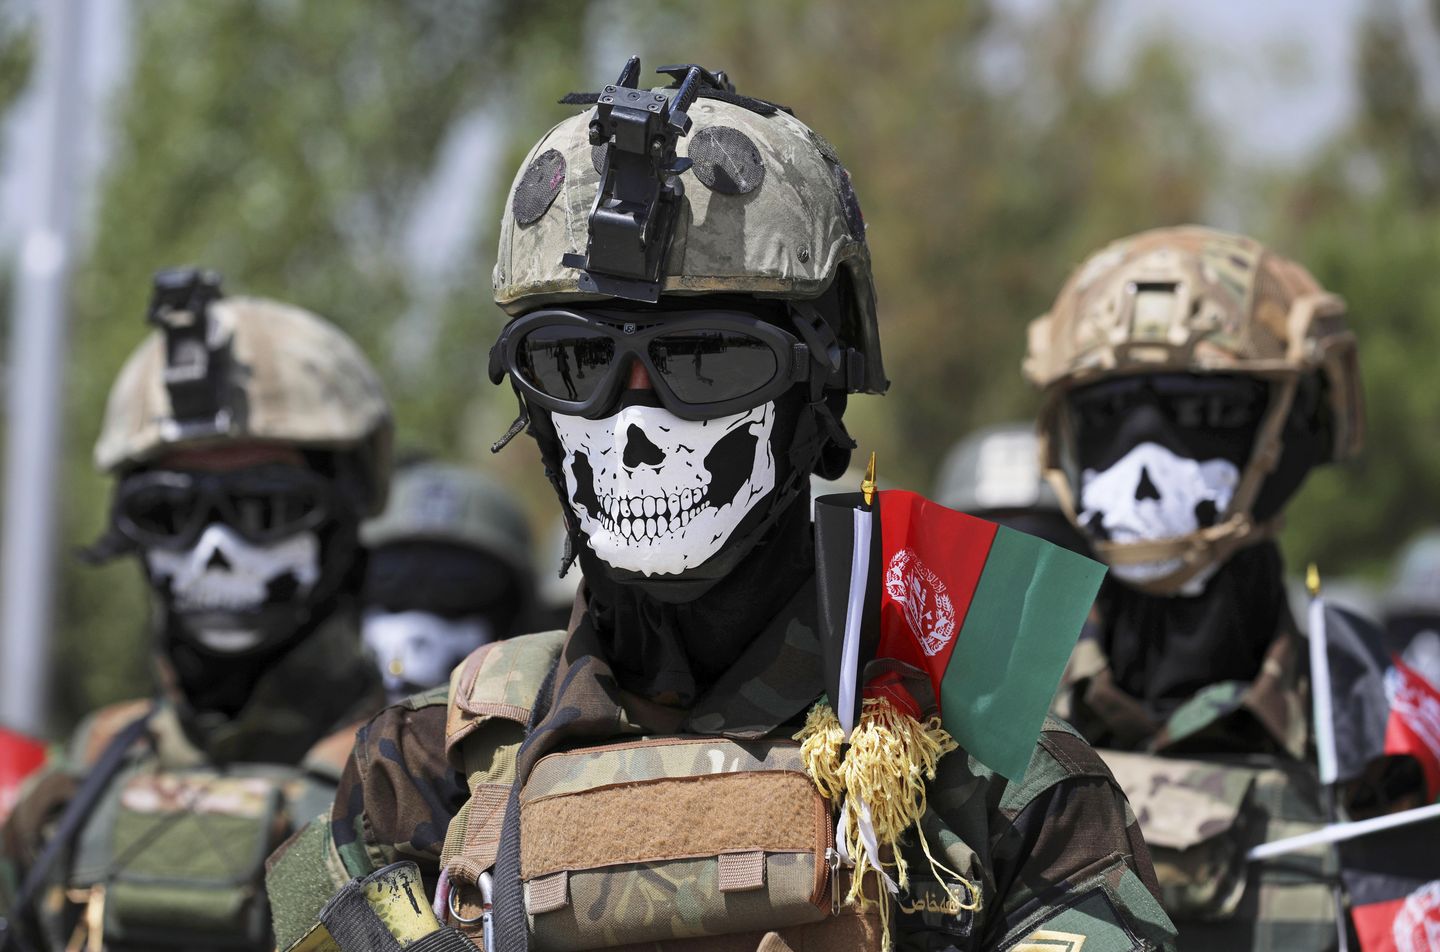 Veterinerler, Rusya'nın ABD tarafından eğitilmiş Afgan komandolarını işe aldığını söylüyor